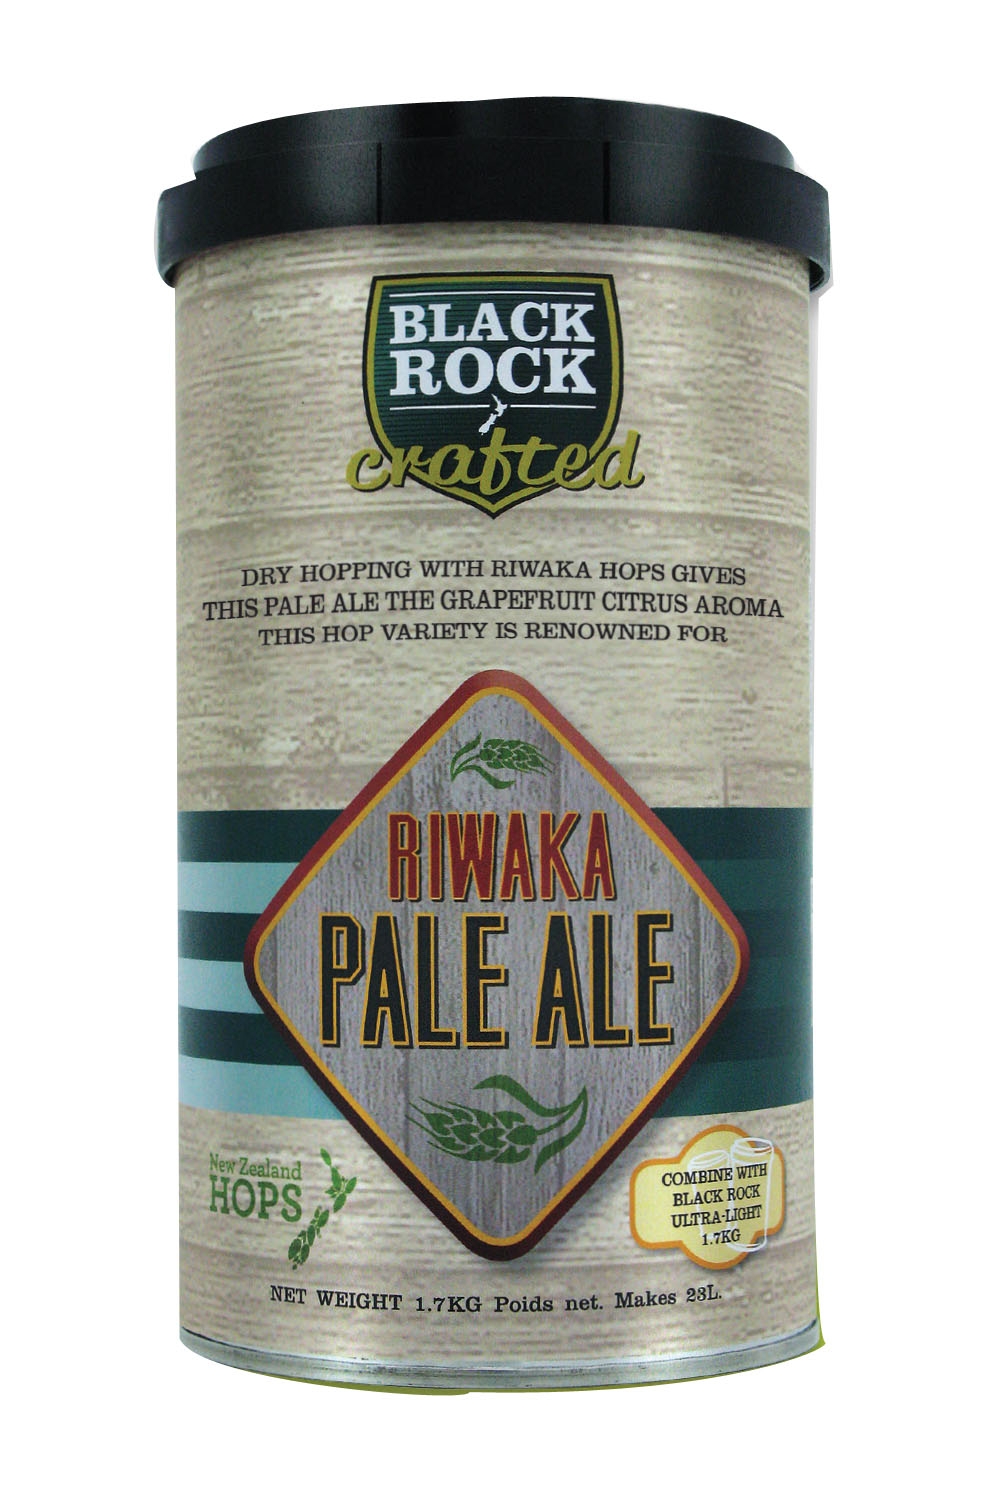 Black Rock Riwaka Pale Ale Beerkit 1.7kg UBREW4U